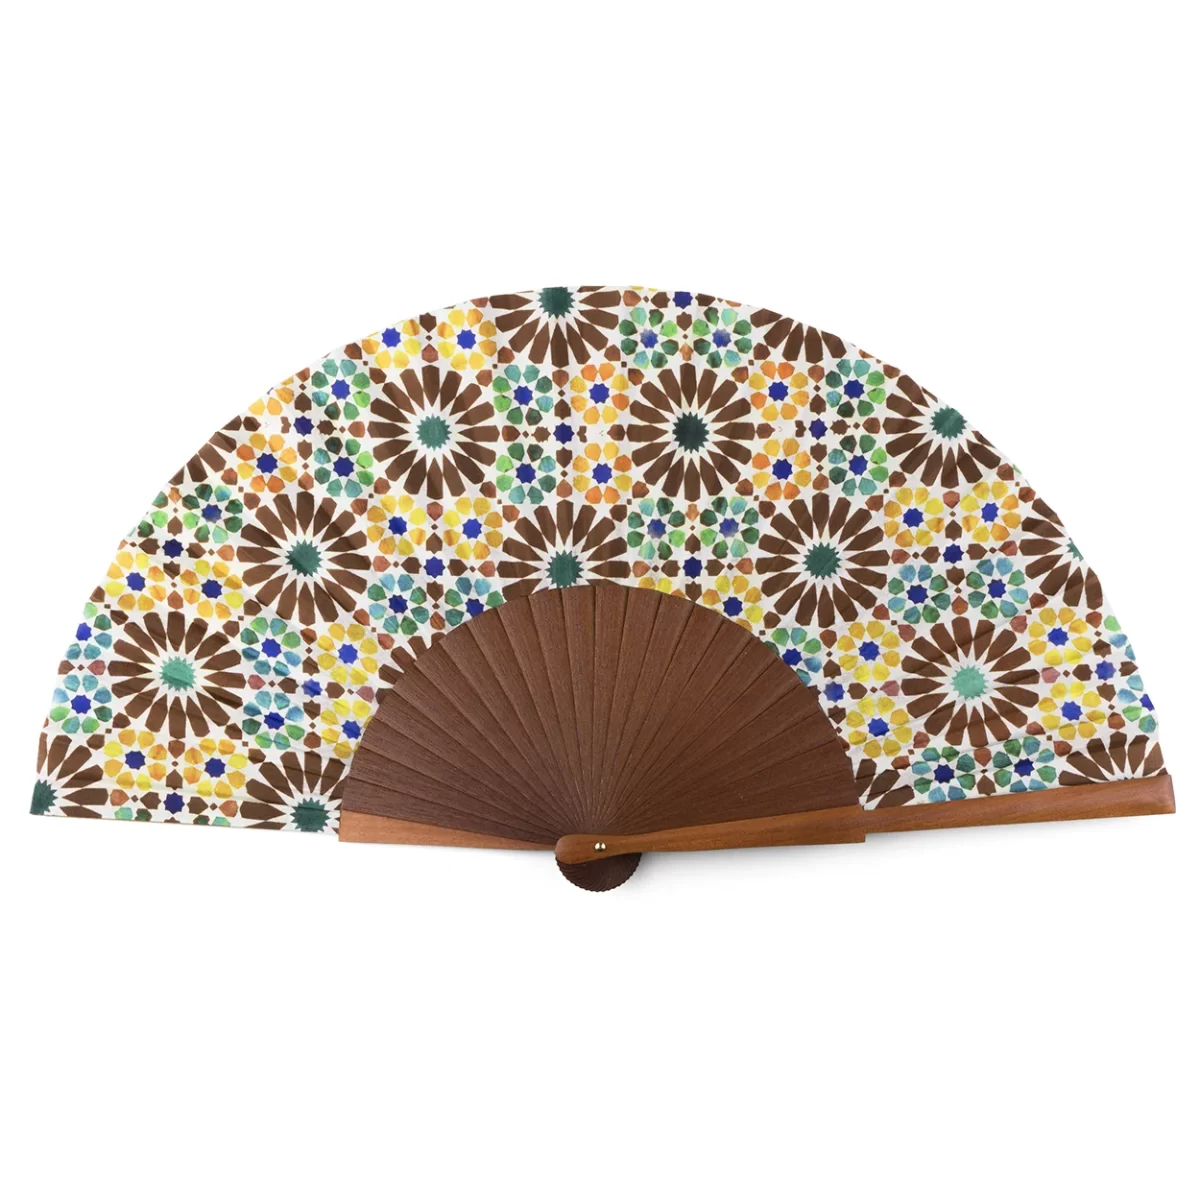 Abanico de seda con arabescos inspirados en la alhambra de granada